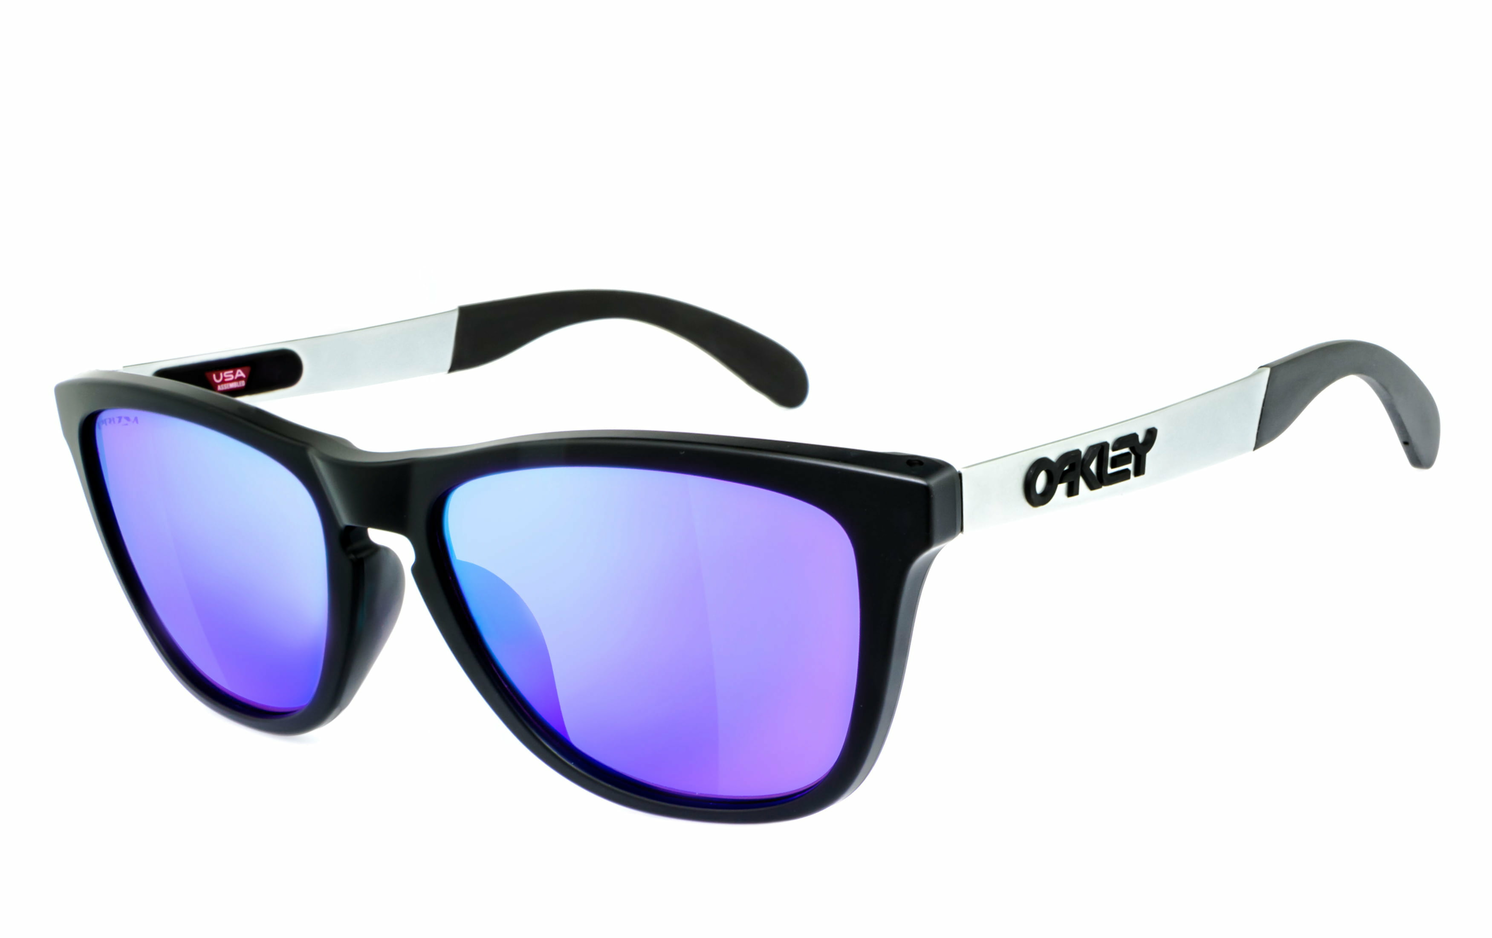 OAKLEY | Frogskins - OO9428  Sportbrille, Fahrradbrille, Sonnenbrille, Bikerbrille, Radbrille, UV400 Schutzfilter